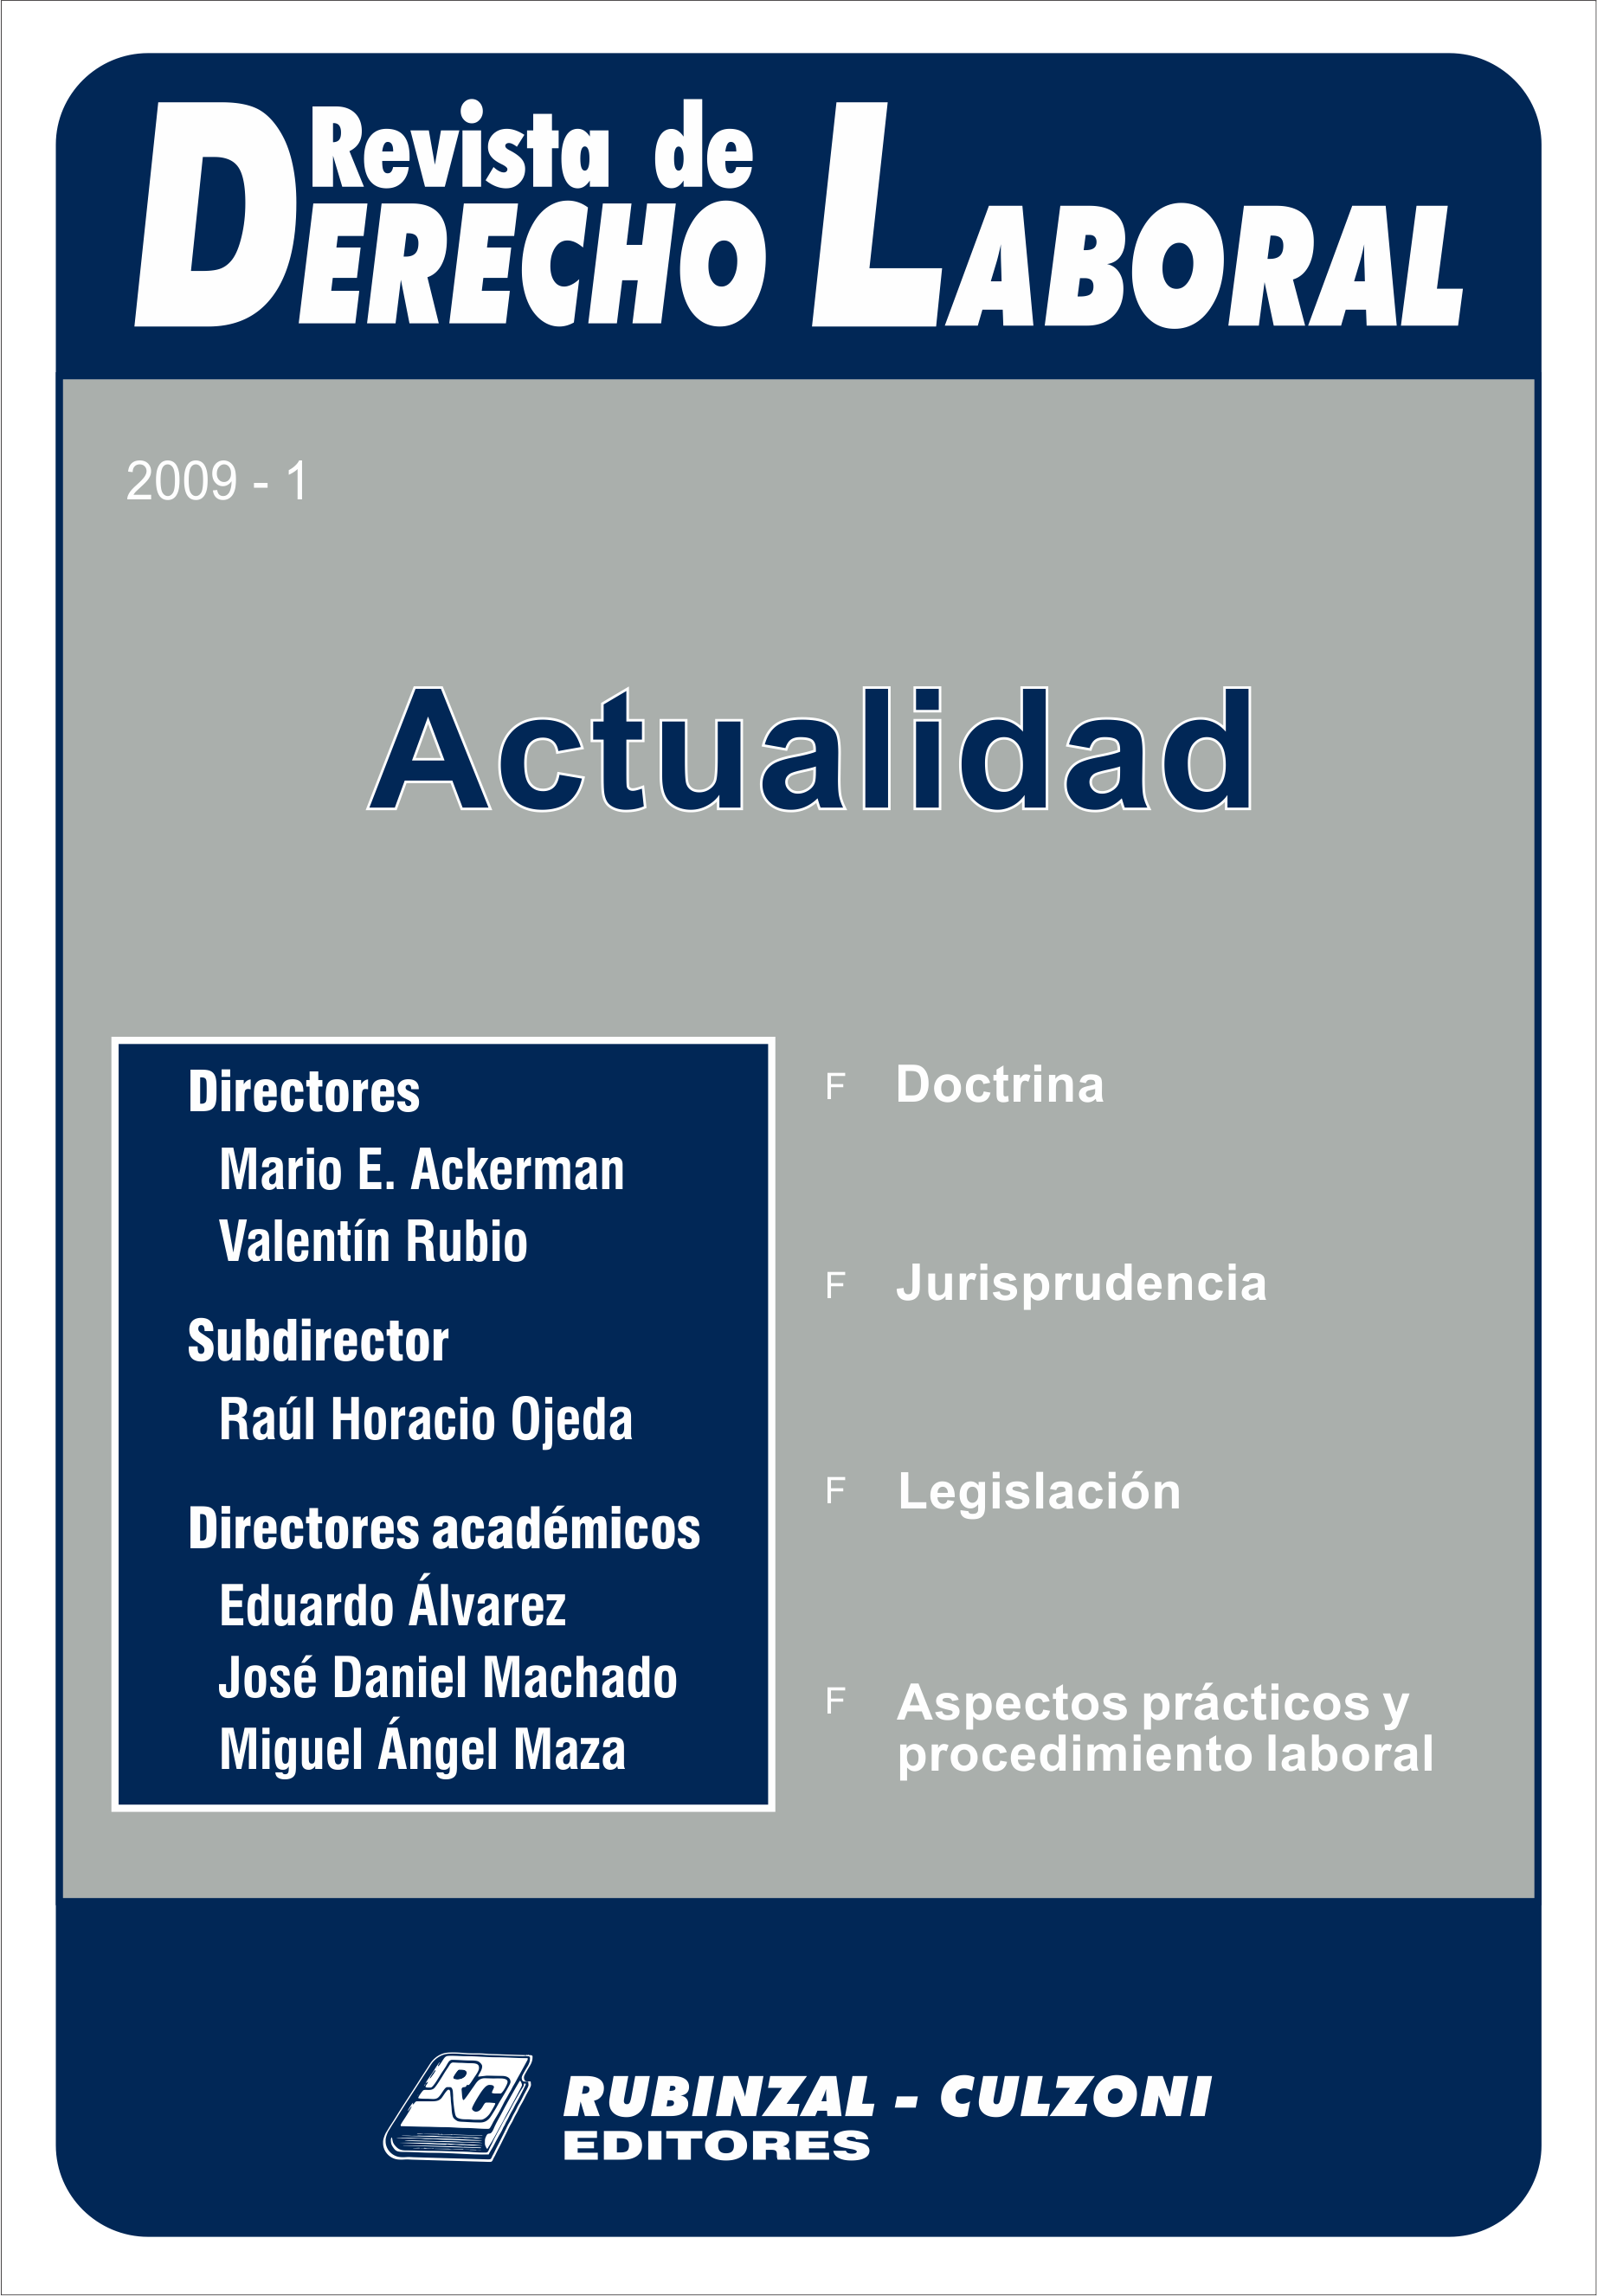 Revista de Derecho Laboral Actualidad - Año 2009 - 1.